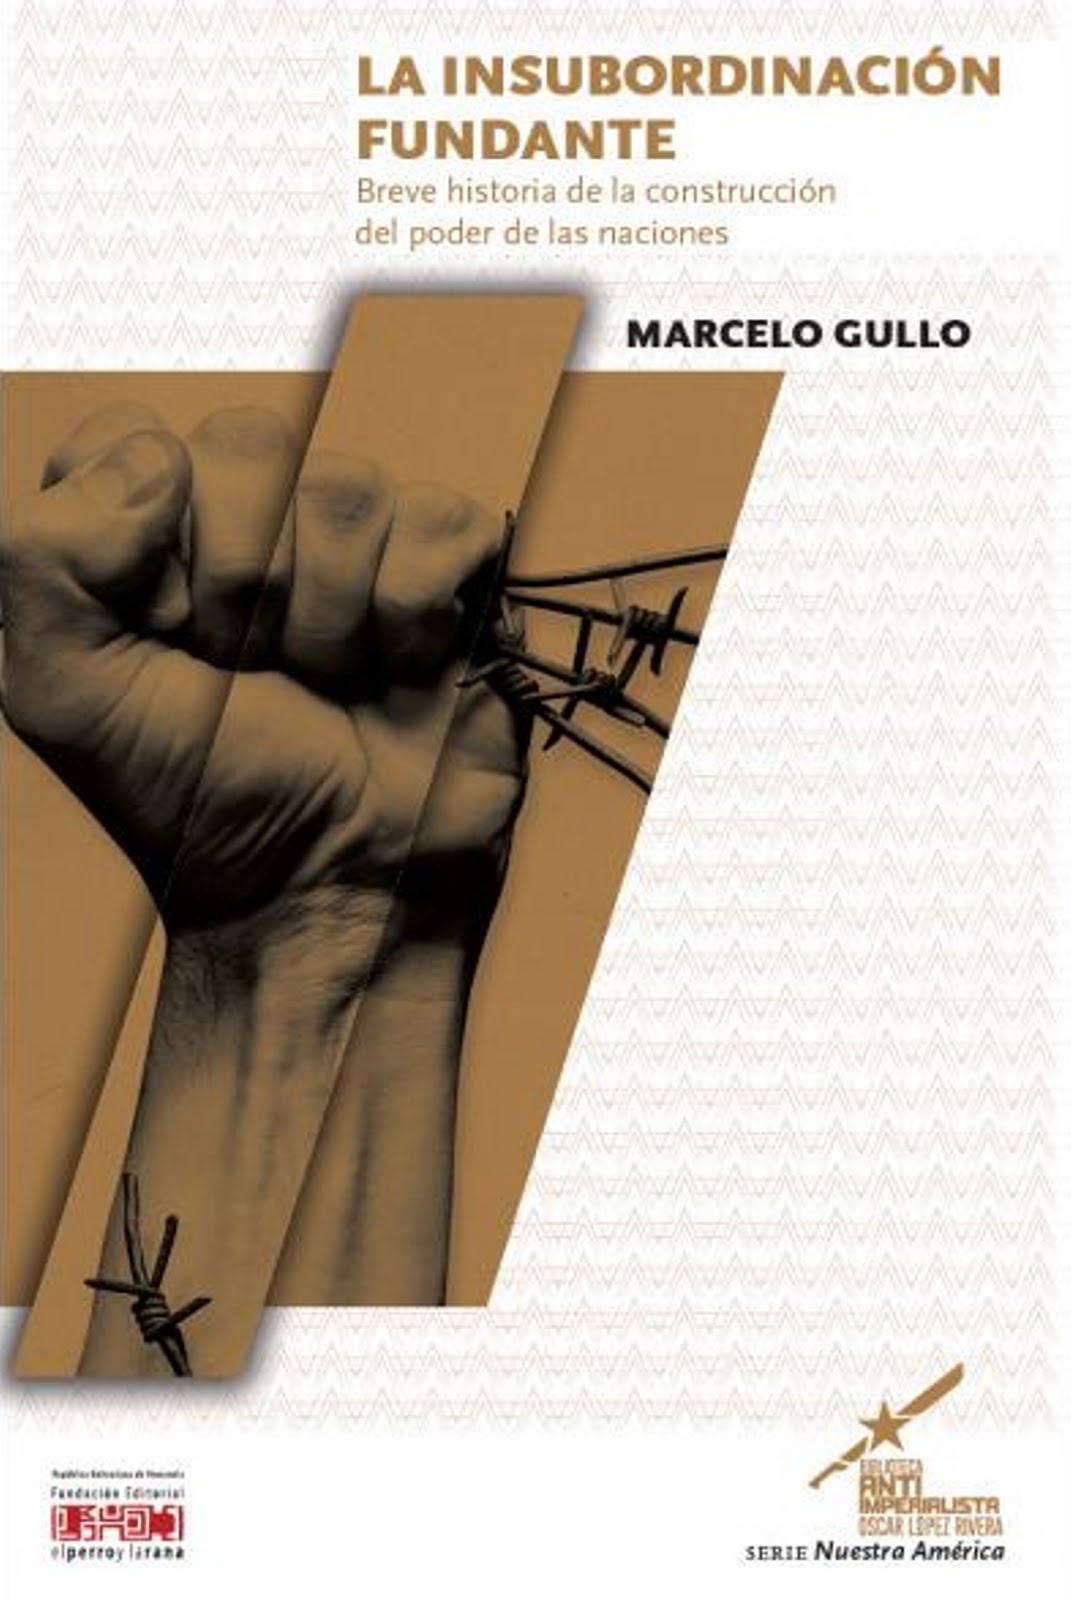 La Insubordinación fundante. autor: Lic. Marcelo Gullo.